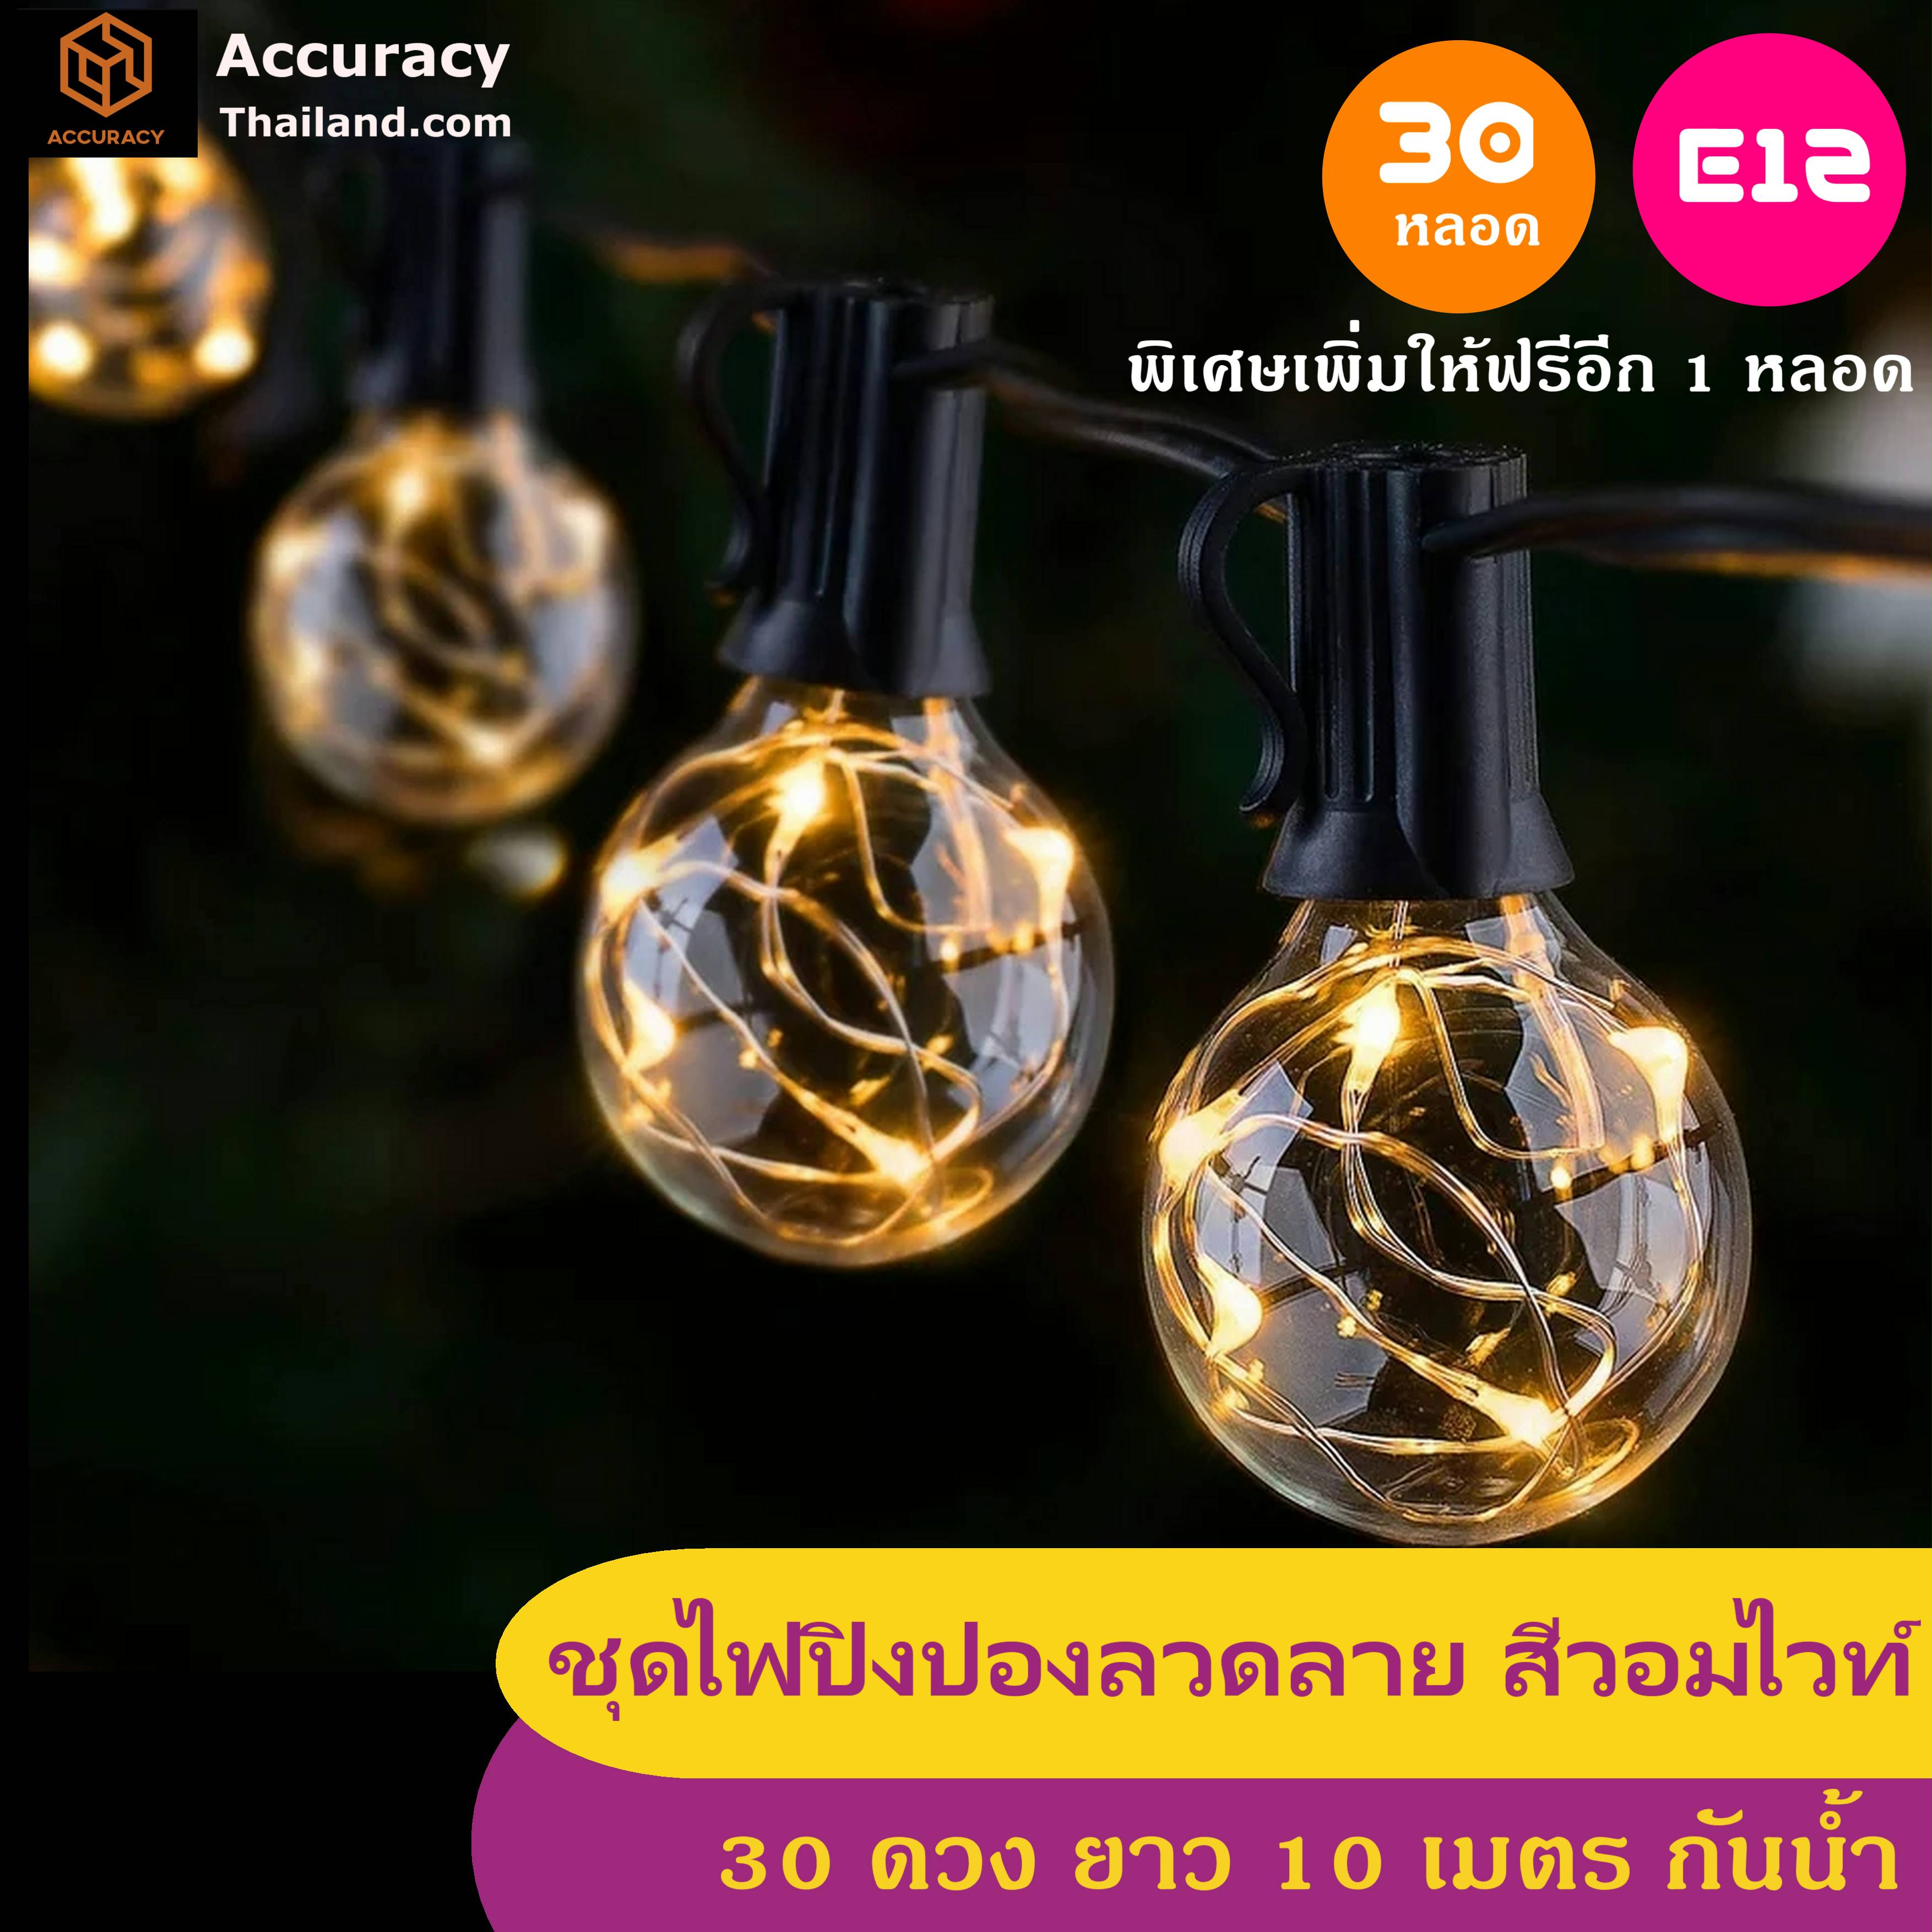 ชุดไฟปิงปอง ลวดลาย แสงสีวอมไวท์ 30 ดวง 10 เมตร ไฟสายE12 แอลอีดี  l แอคคิวเรซี่ Accuracy Thailand